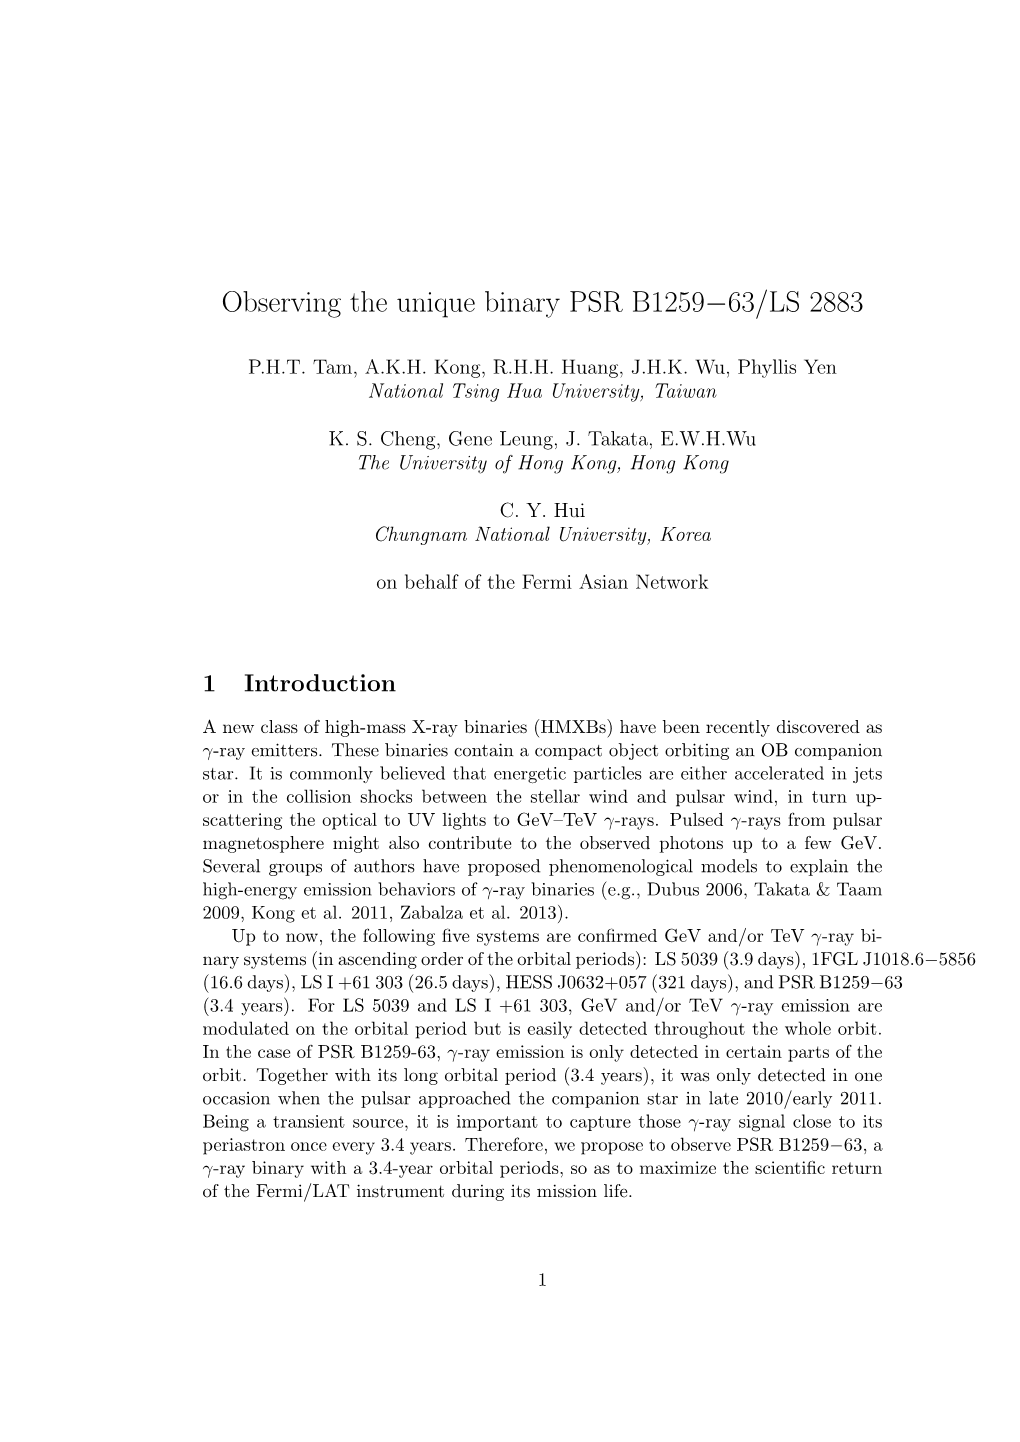 Observing the Unique Binary PSR B1259−63/LS 2883